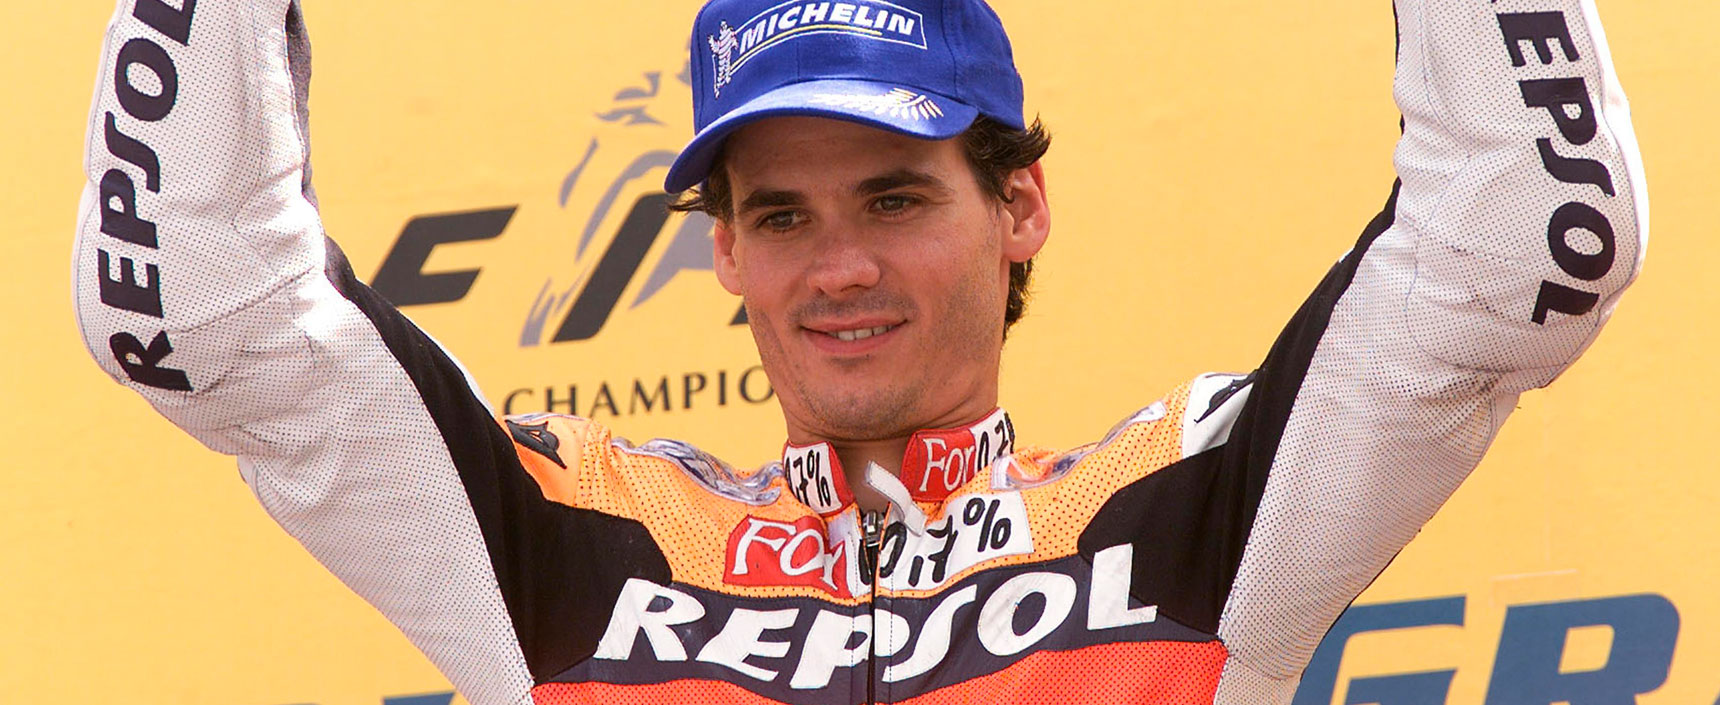 Alex Crivillé se convirtió en 1999 en el primer español en ganar el Mundial en la categoría de 500cc